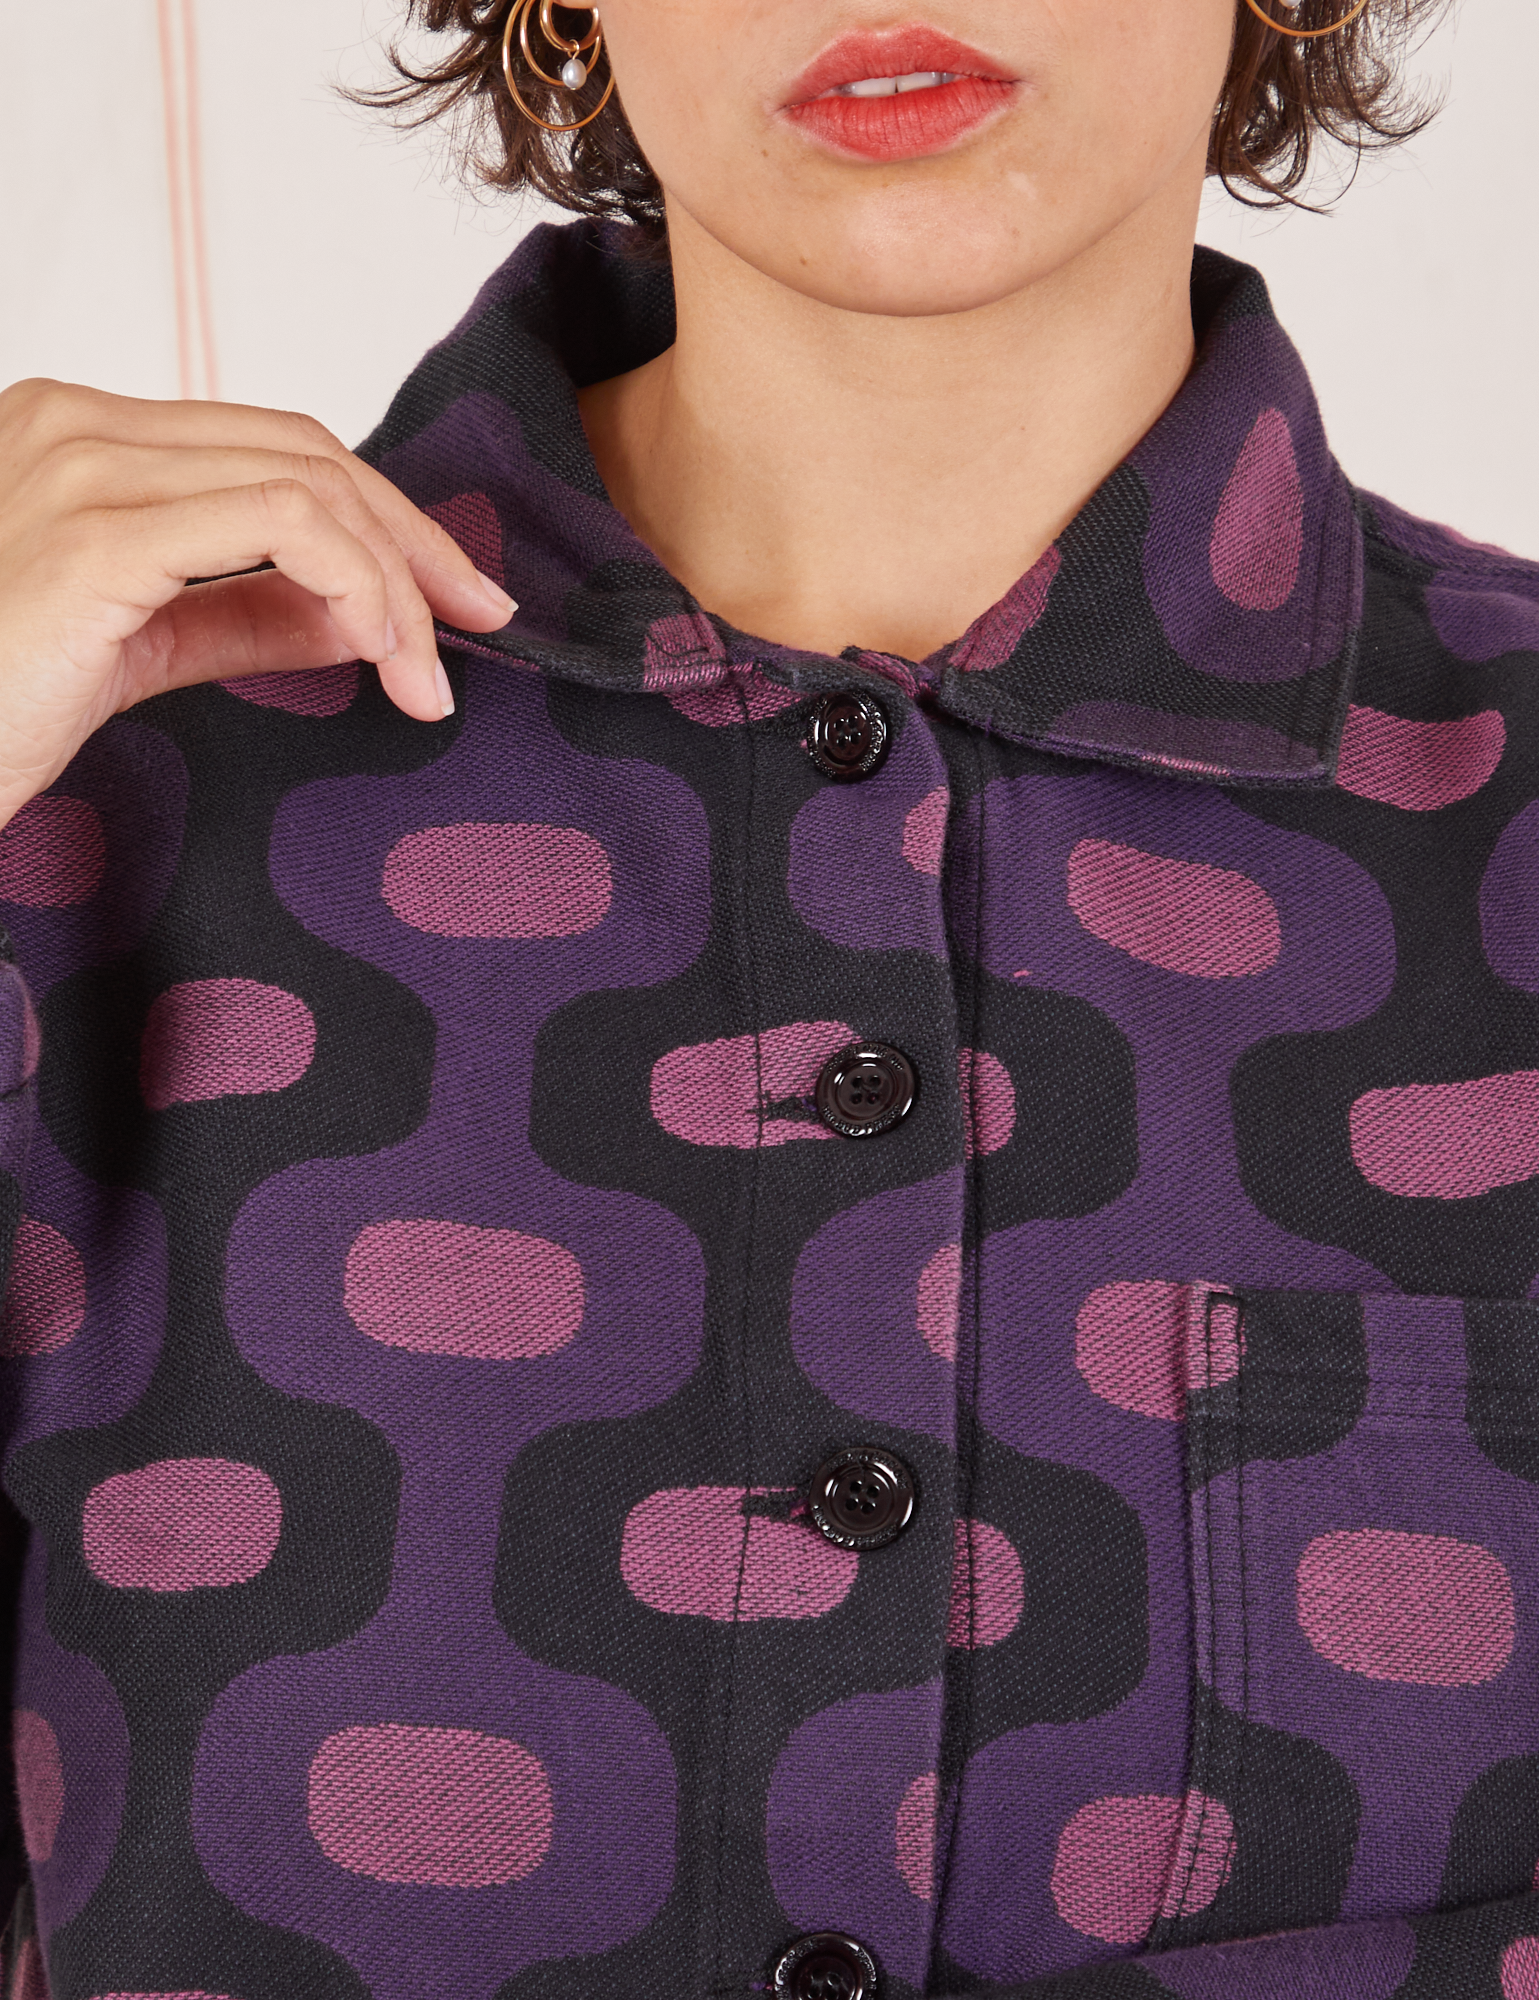  Purple Tile Jacquard Work Jacket front close up on Tiara